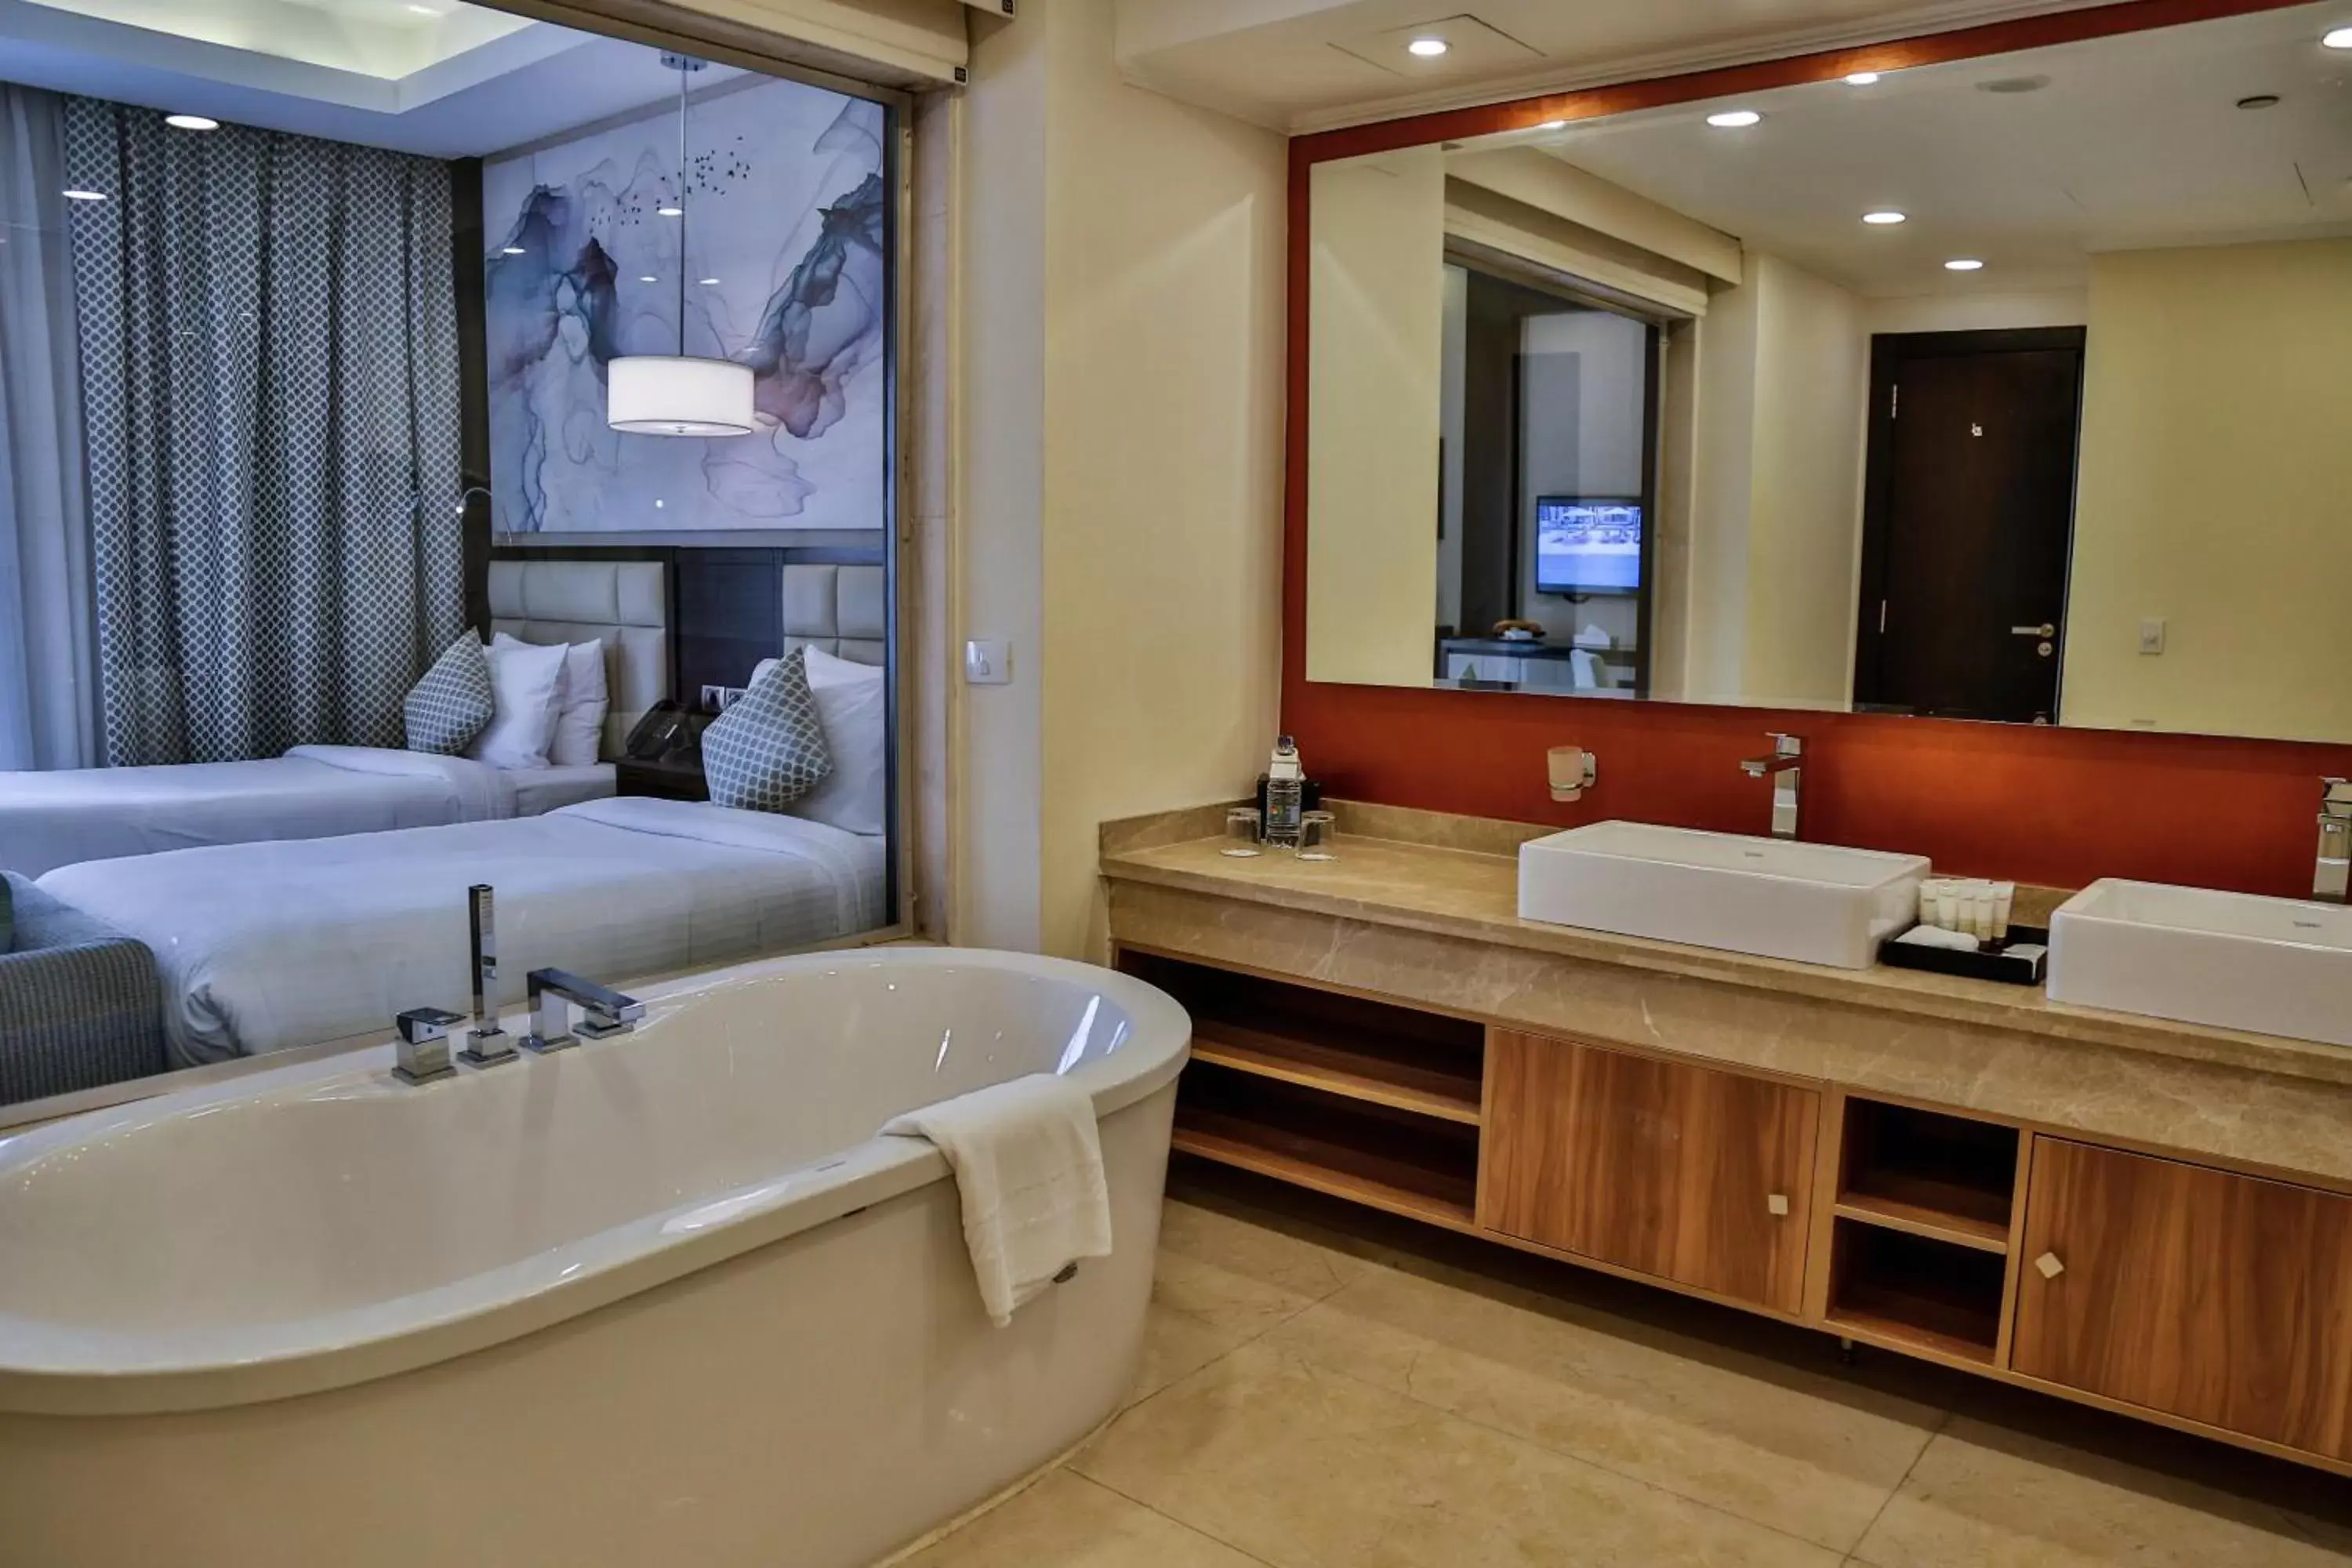 Bathroom in Triumph Luxury Hotel